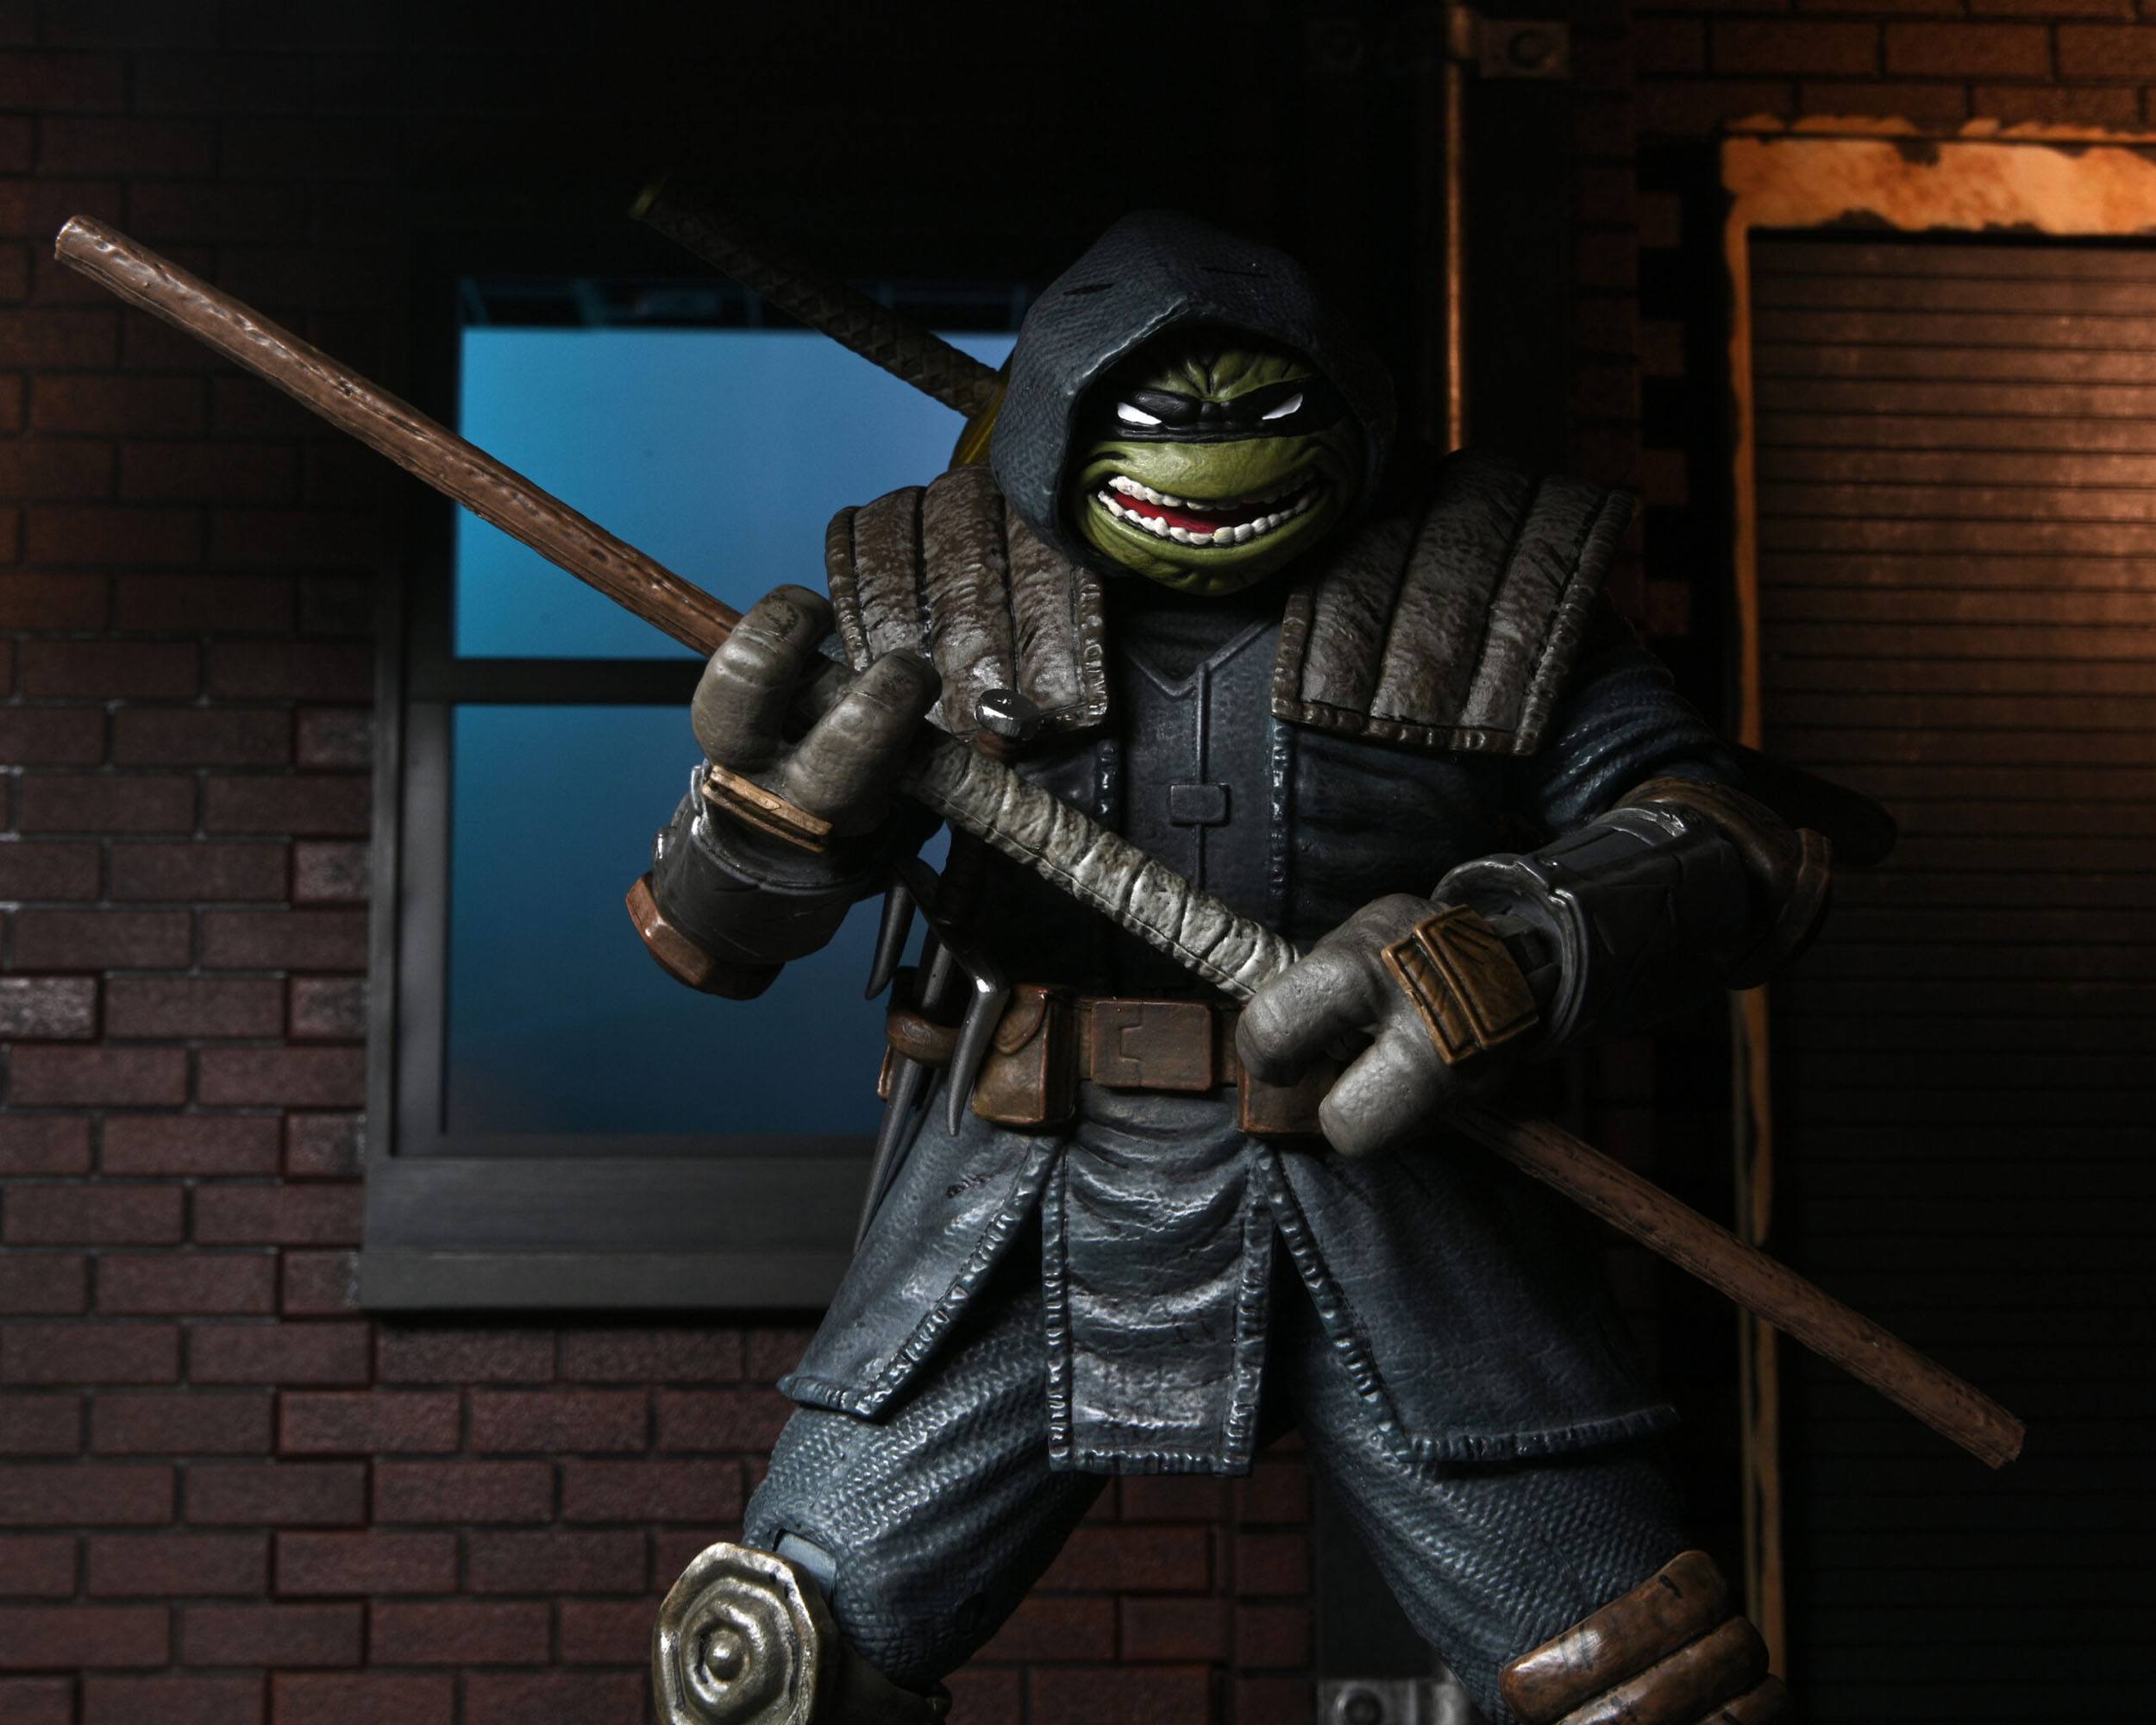 Teenage Mutant Ninja Turtles (IDW Comics) Actionfigur Ultimate The Last Ronin (Armored) 18 cm NECA54268 634482542682